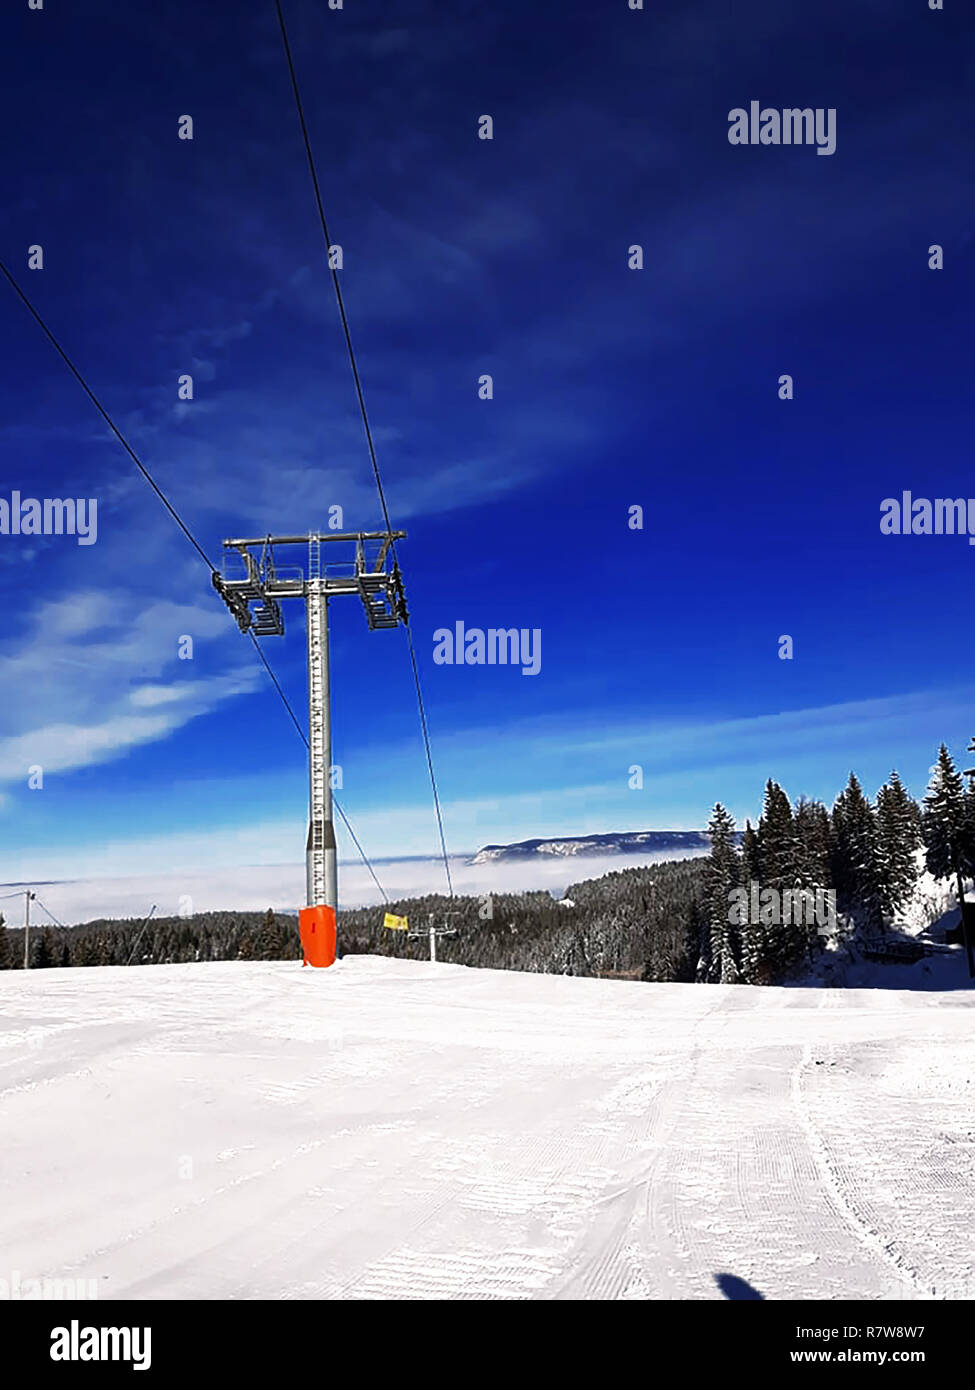 Erleben Sie den Nervenkitzel des Winters auf dem Berg, ein perfekter Ort für Skifahrer Stockfoto